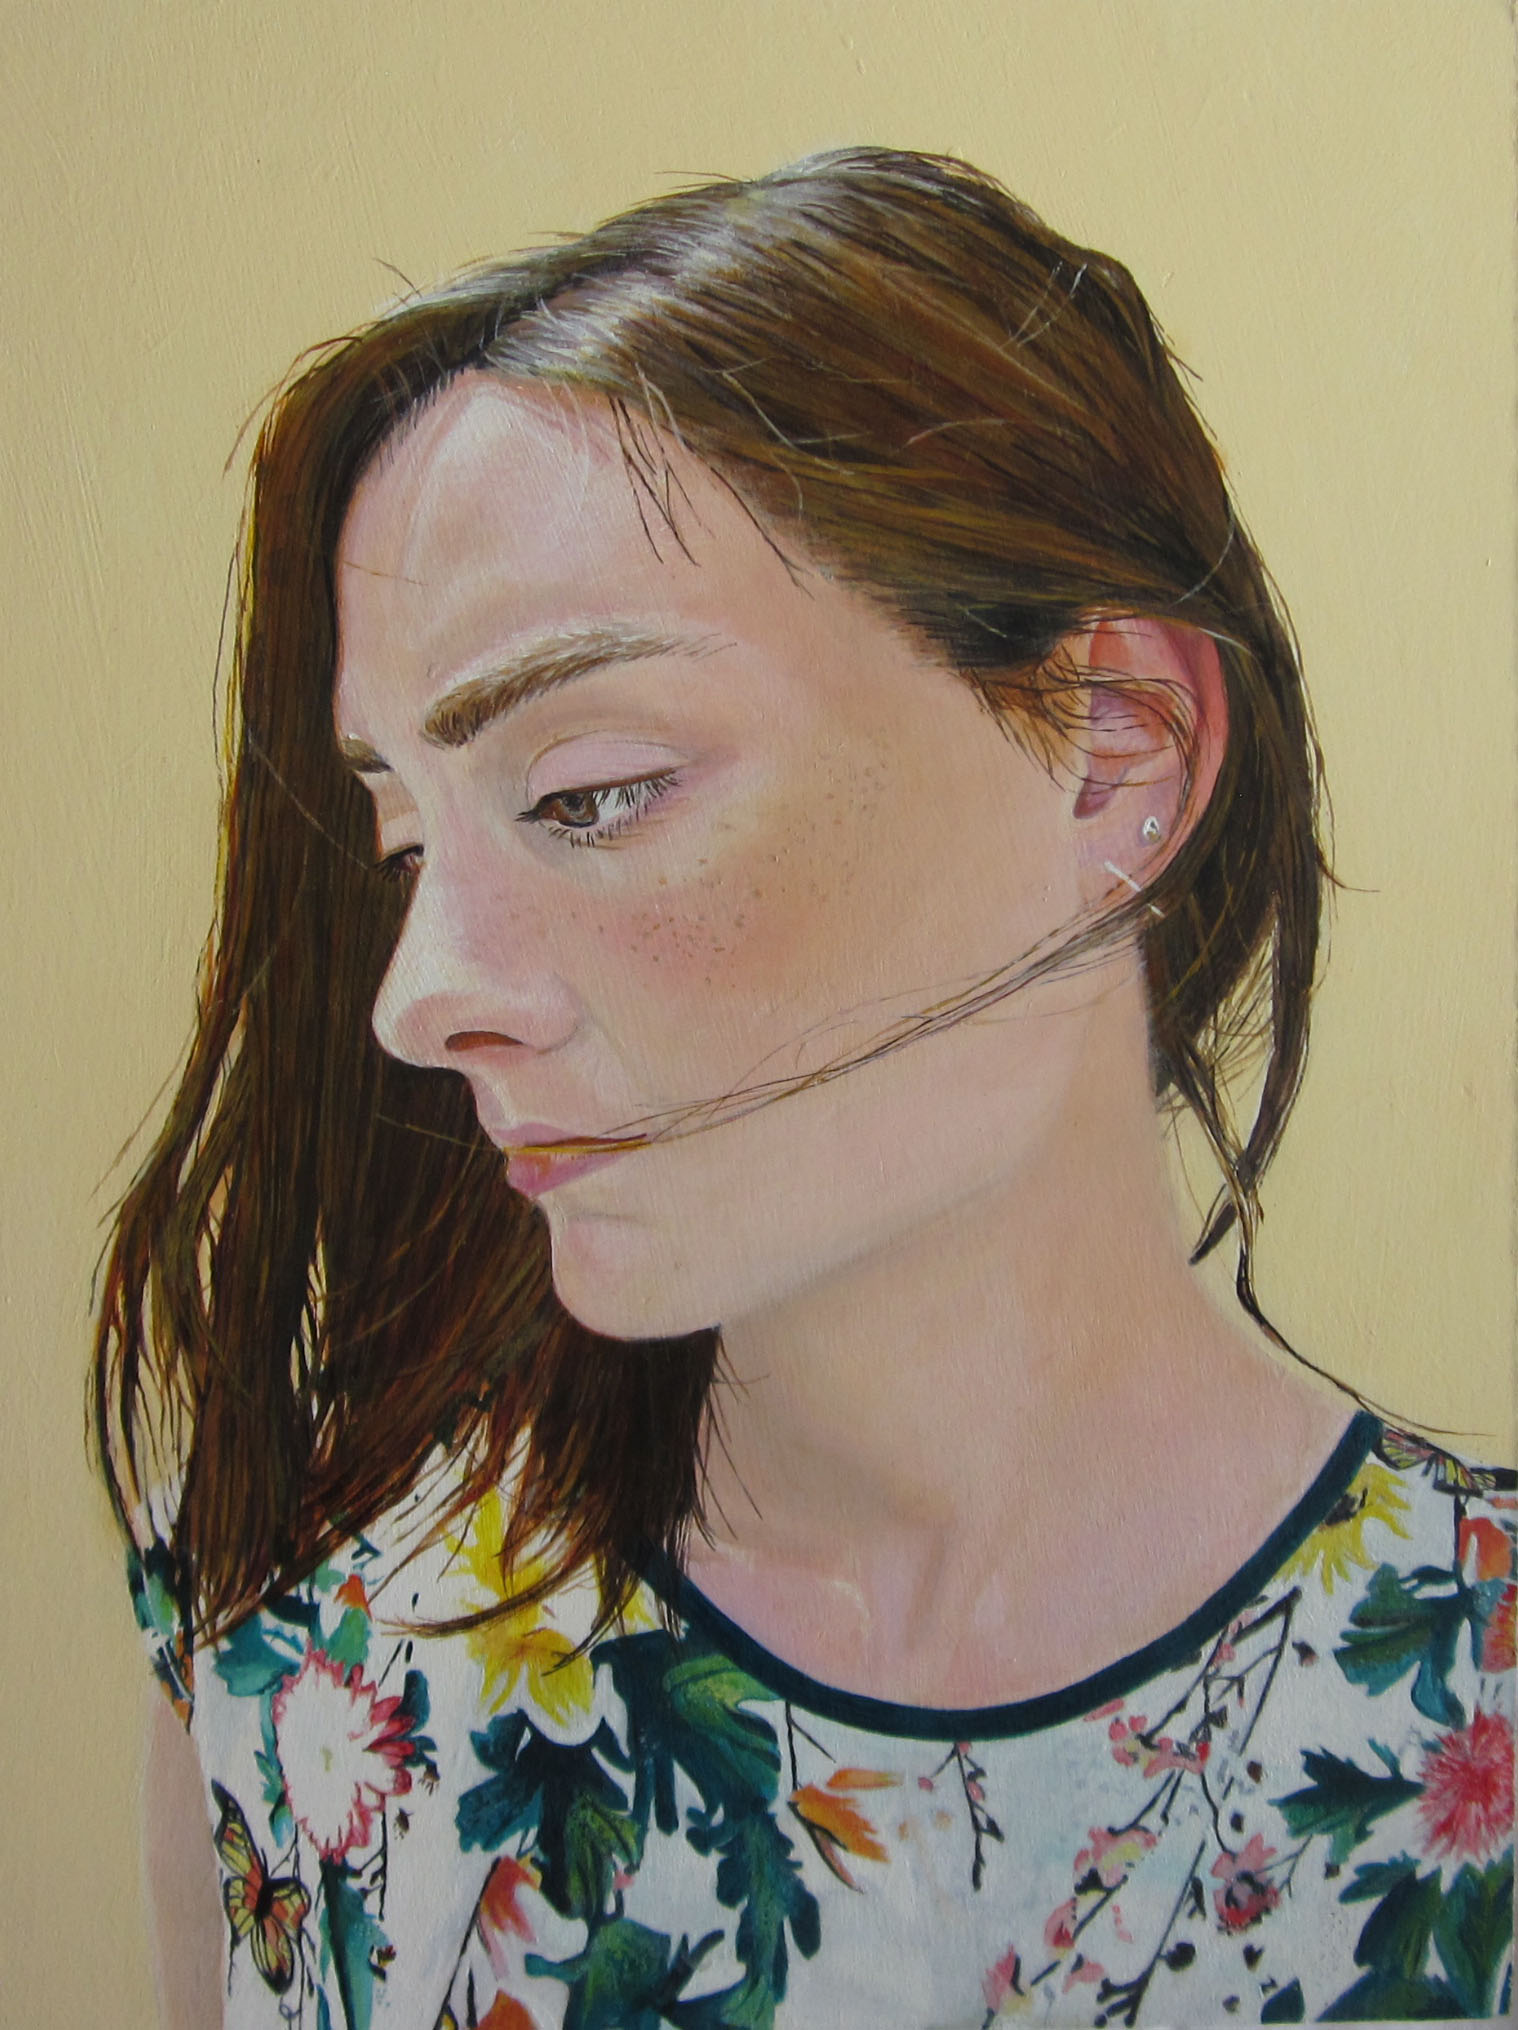 'Swept' Jeanne Warren Acrylic on Board, 28 x 37 cm, 2017